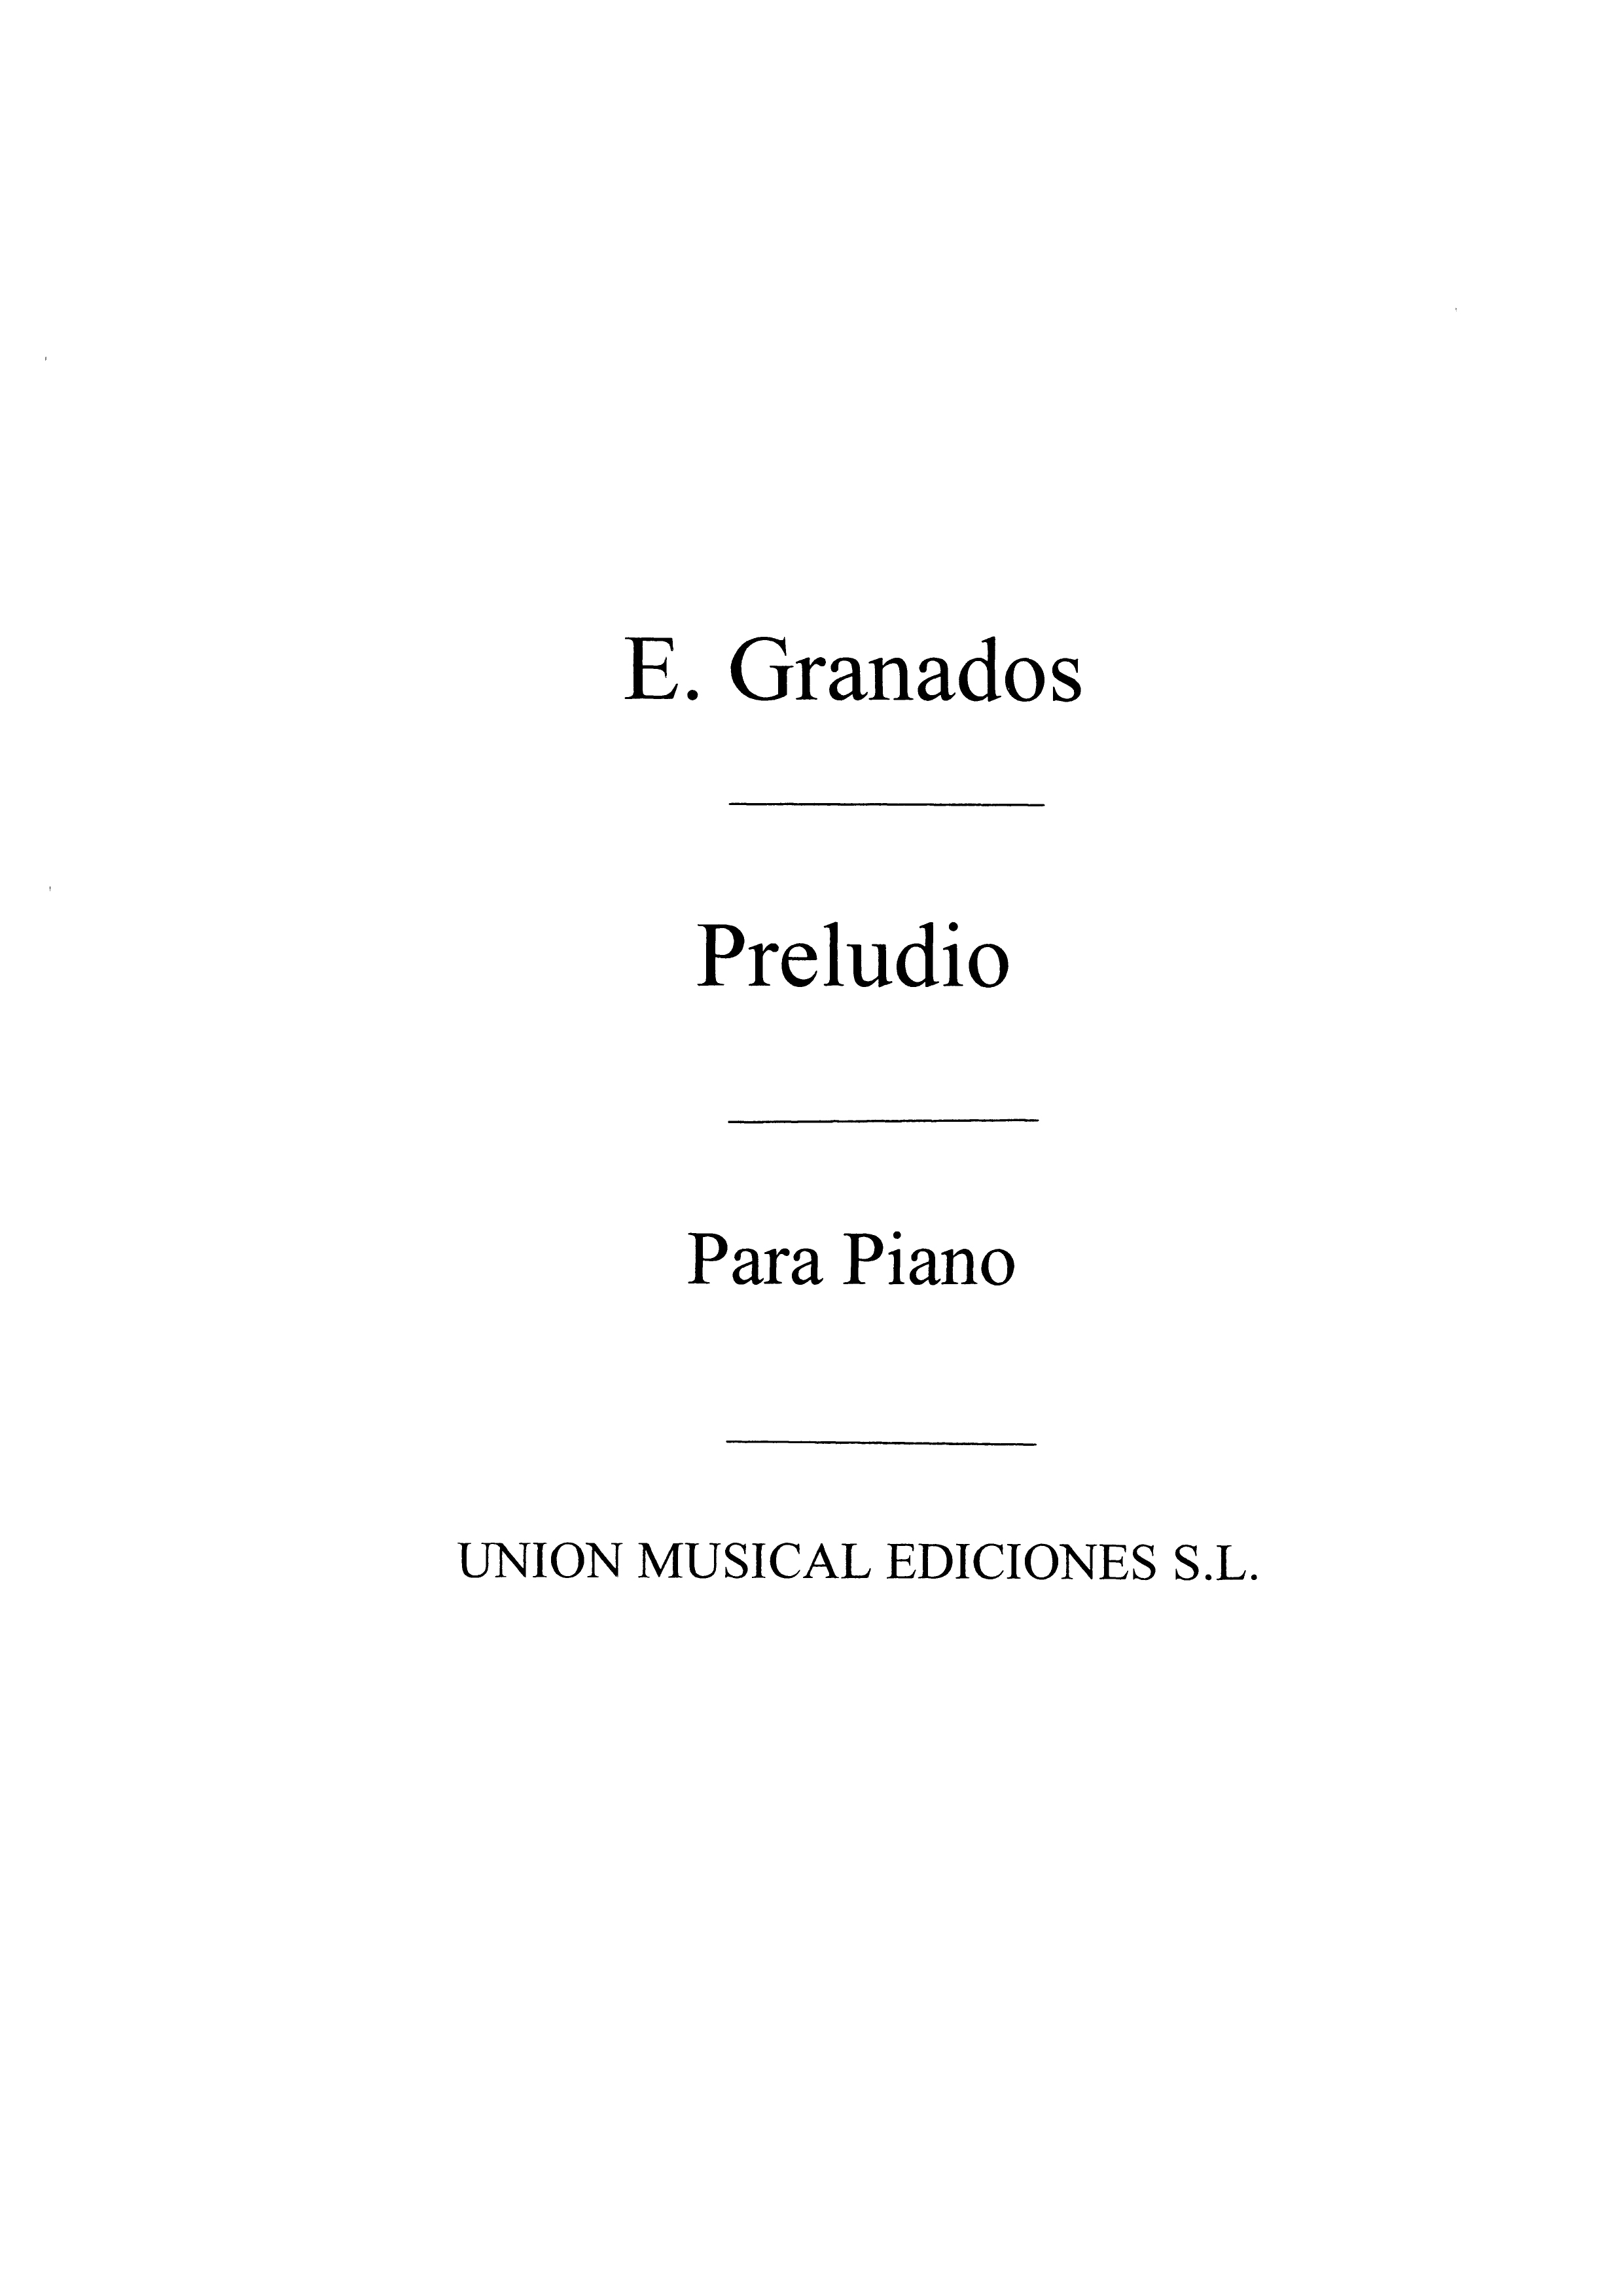 Granados: Preludio De Seis Piezas Sobre Cantos Populares Espanoles for Piano